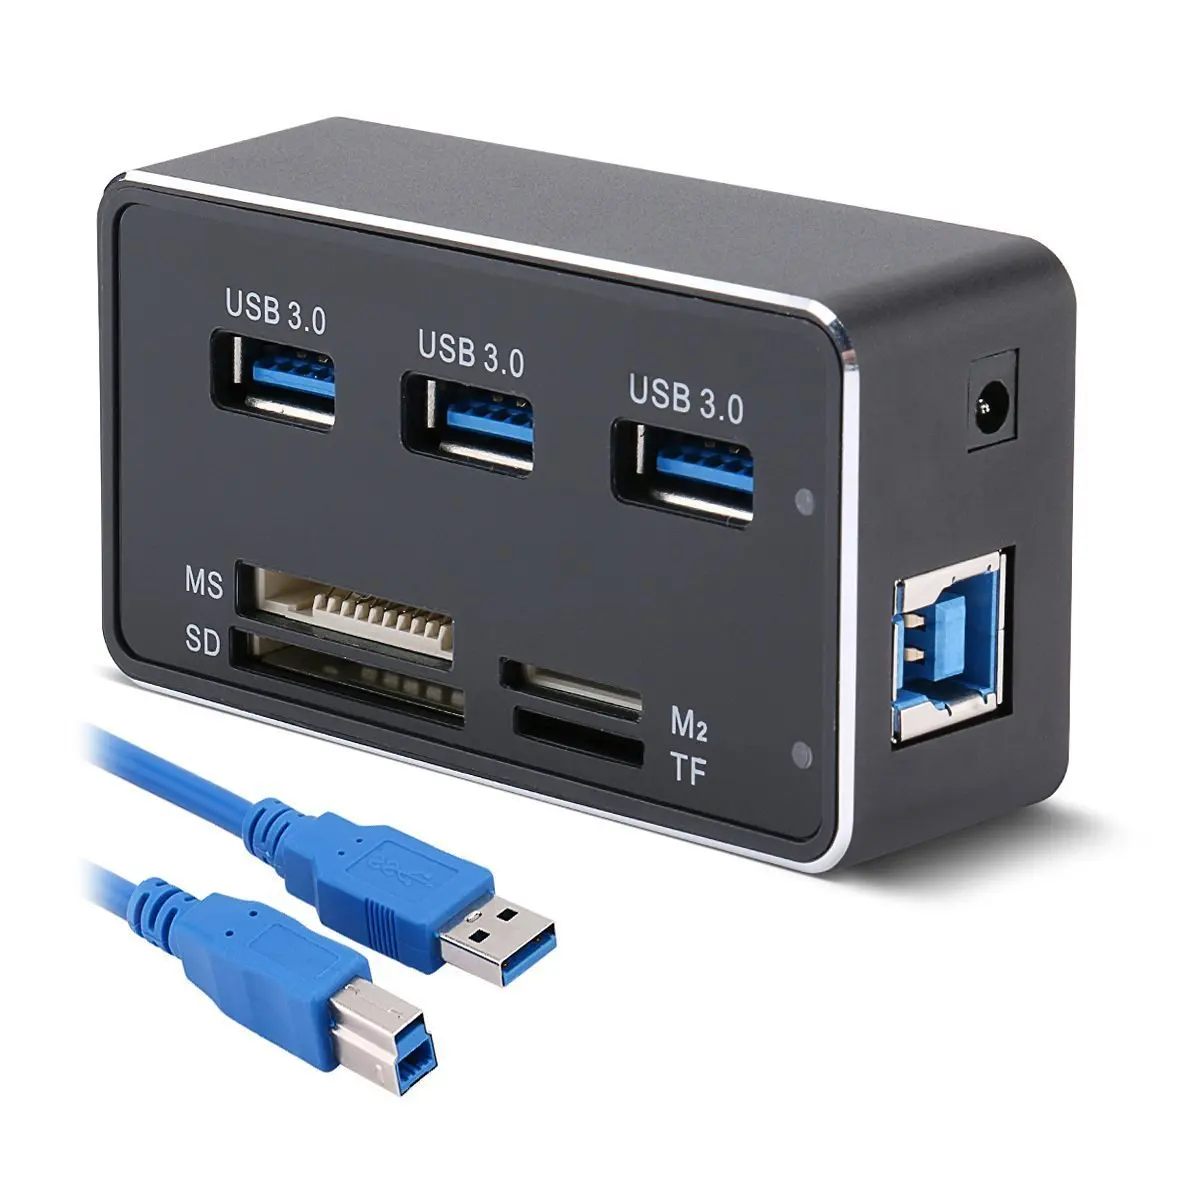 Купить usb 7. USB концентратор USB 3.0. USB-хаб USB3.0 концентратор разветвитель. USB хаб (концентратор) USB 3.0 Combo. Хаб УСБ 3.0.